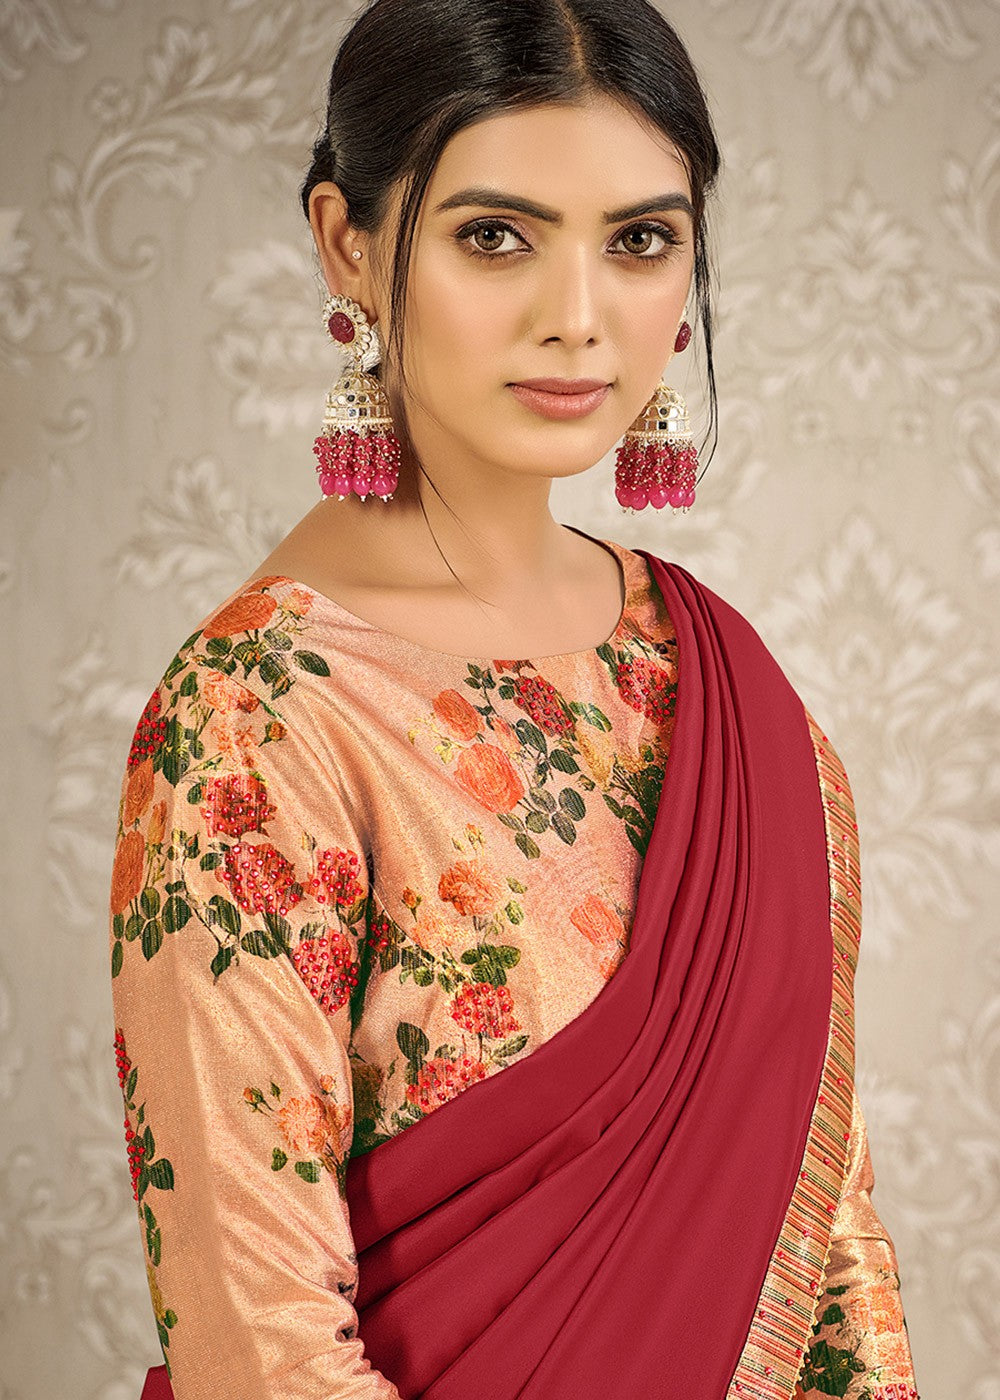 Buy Red & Rose Gold Digital Print Saree - Satin Silk Designer Saree